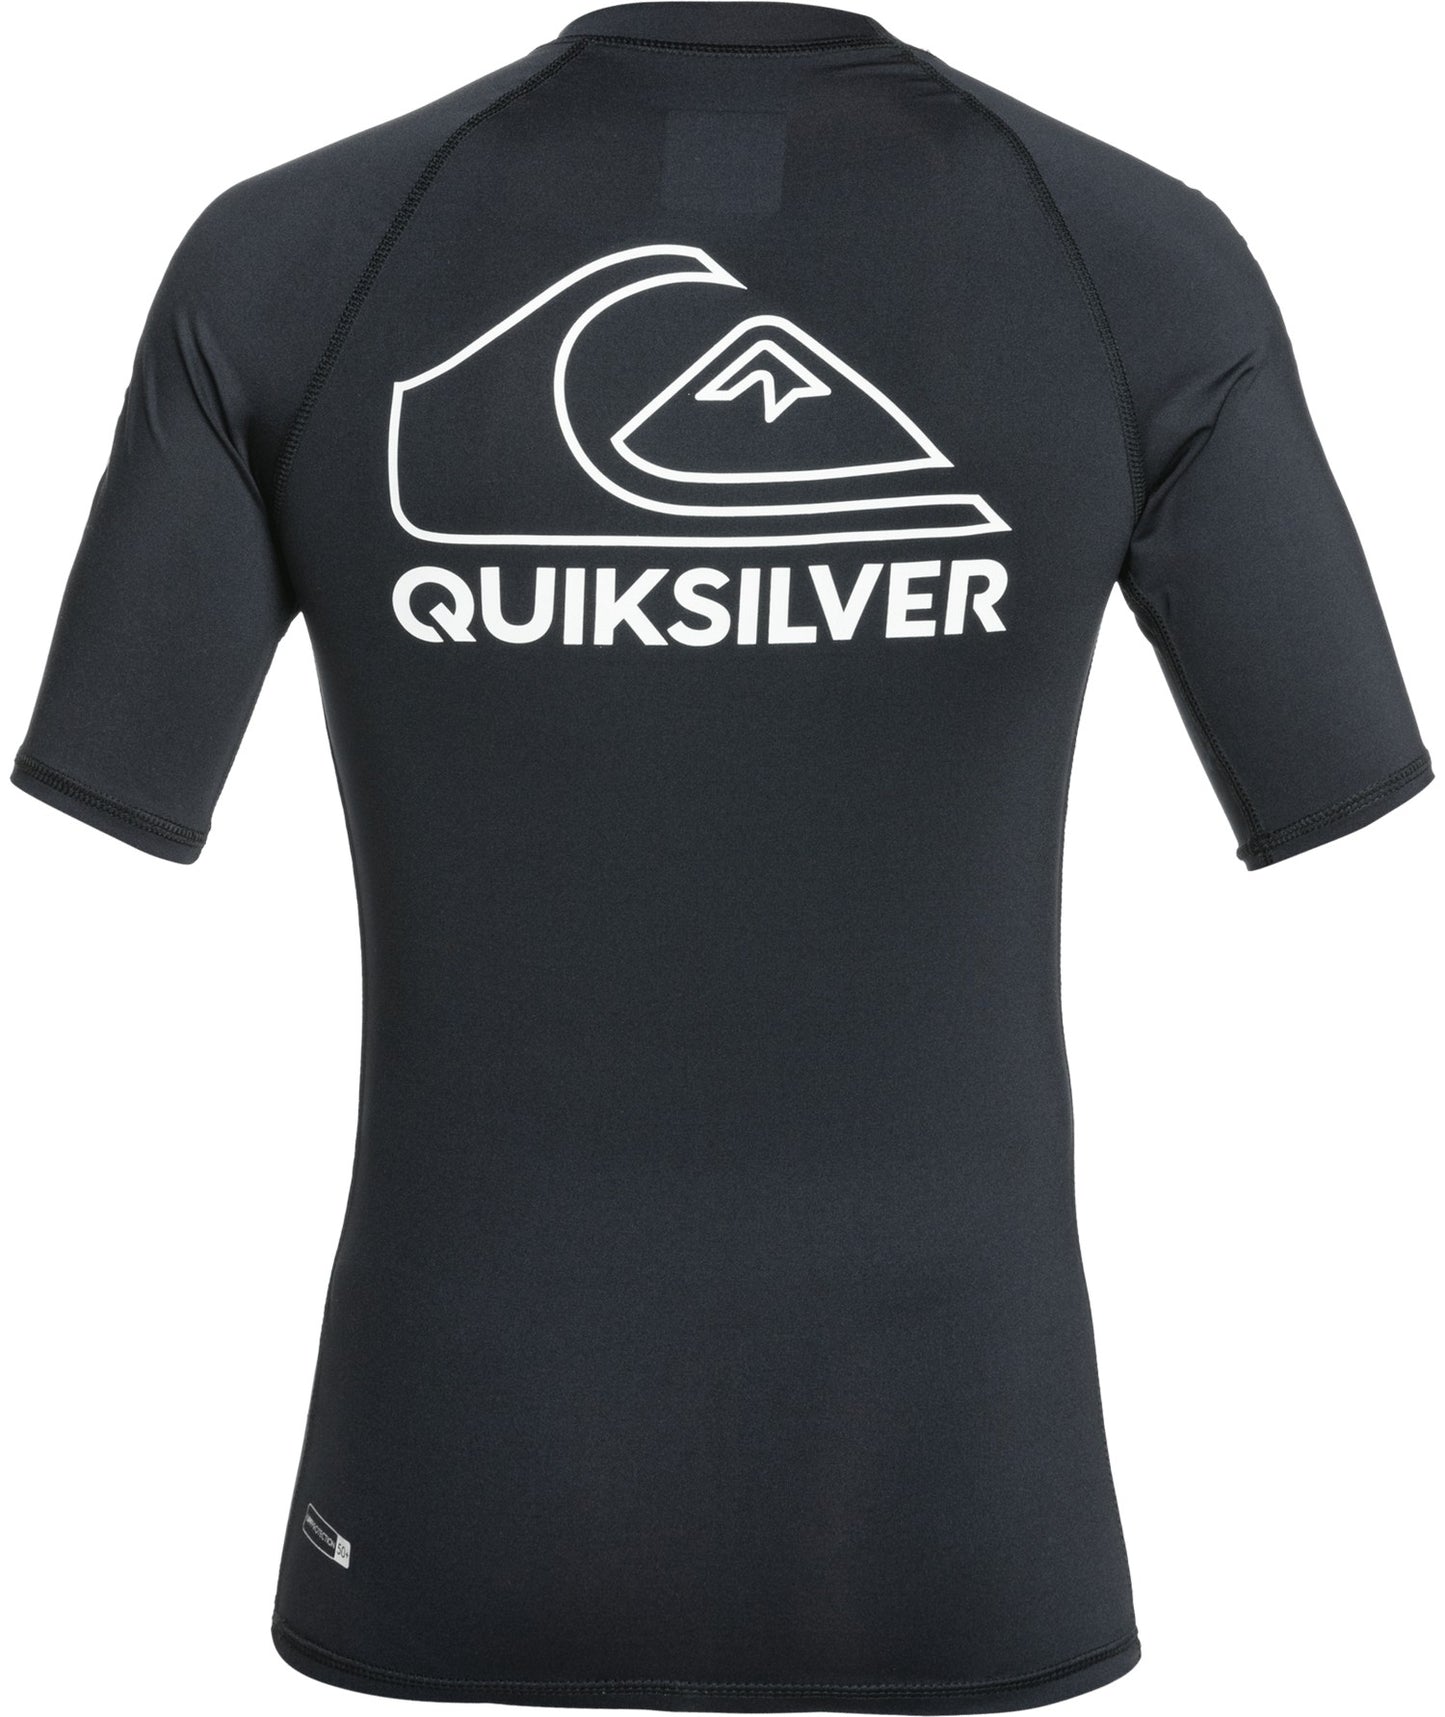 Quiksilver - UV-zwemshirt voor tieners - On Tour - Zwart